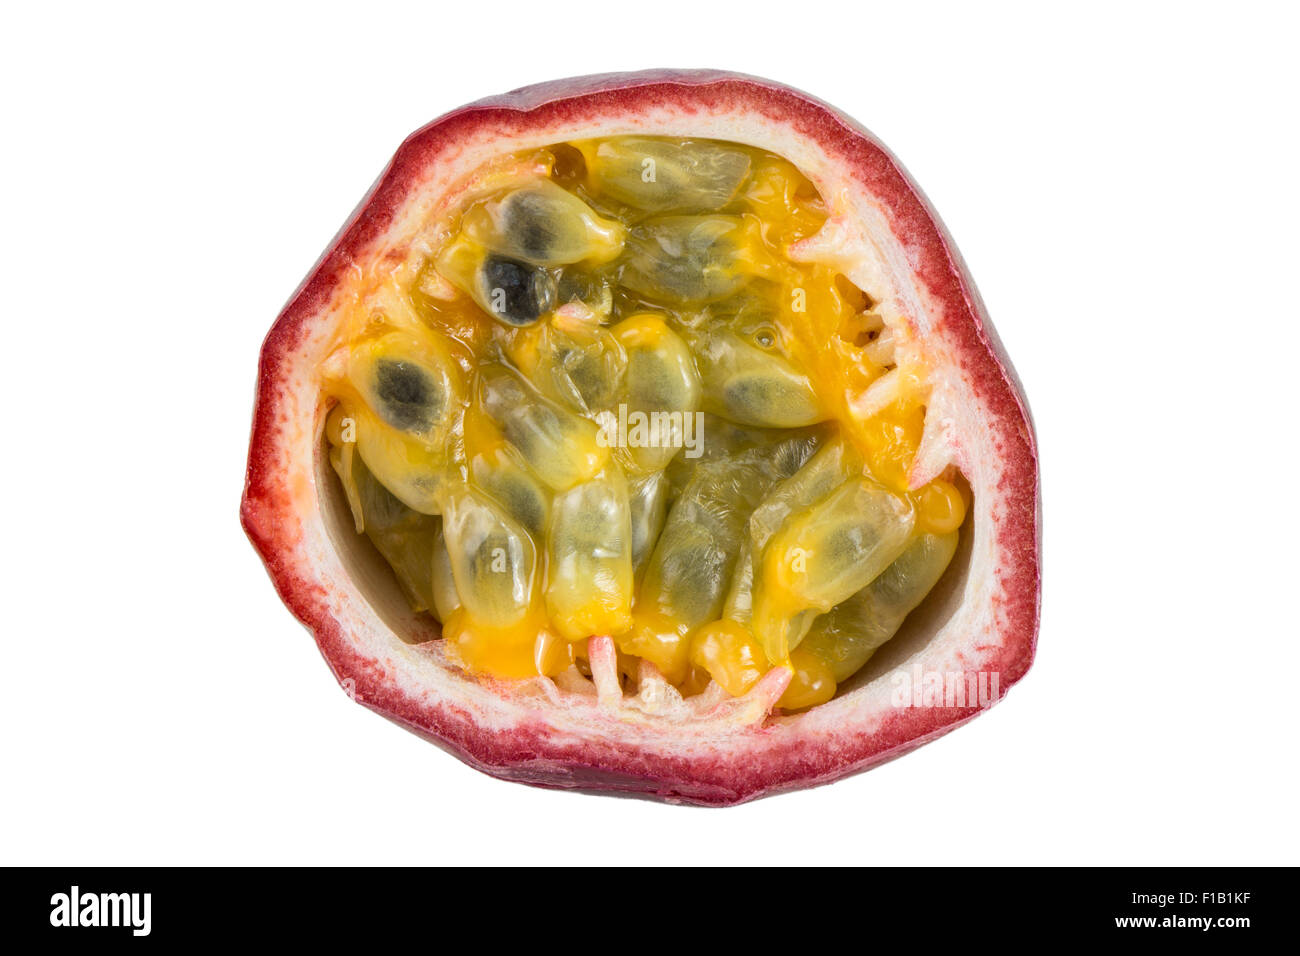 Primo piano di una fette di frutto della passione (granadiglie, viola granadilla (Passiflora edulis) visto dalla parte anteriore, isolato su bianco Foto Stock